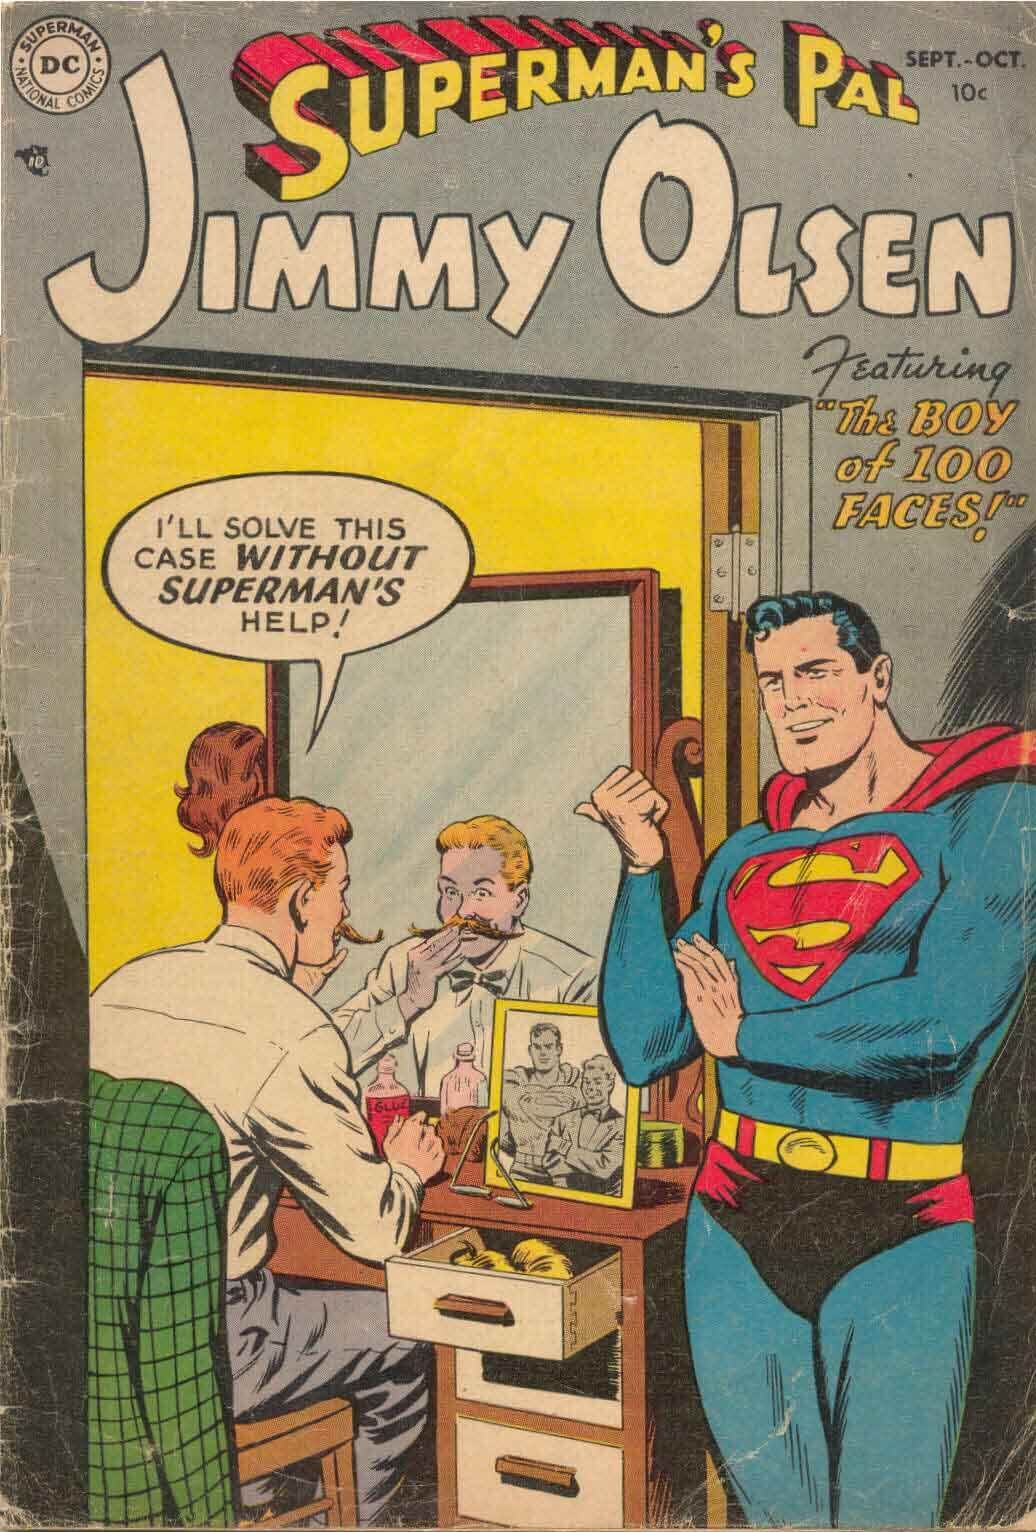 Jimmy Olsen #1 Cover